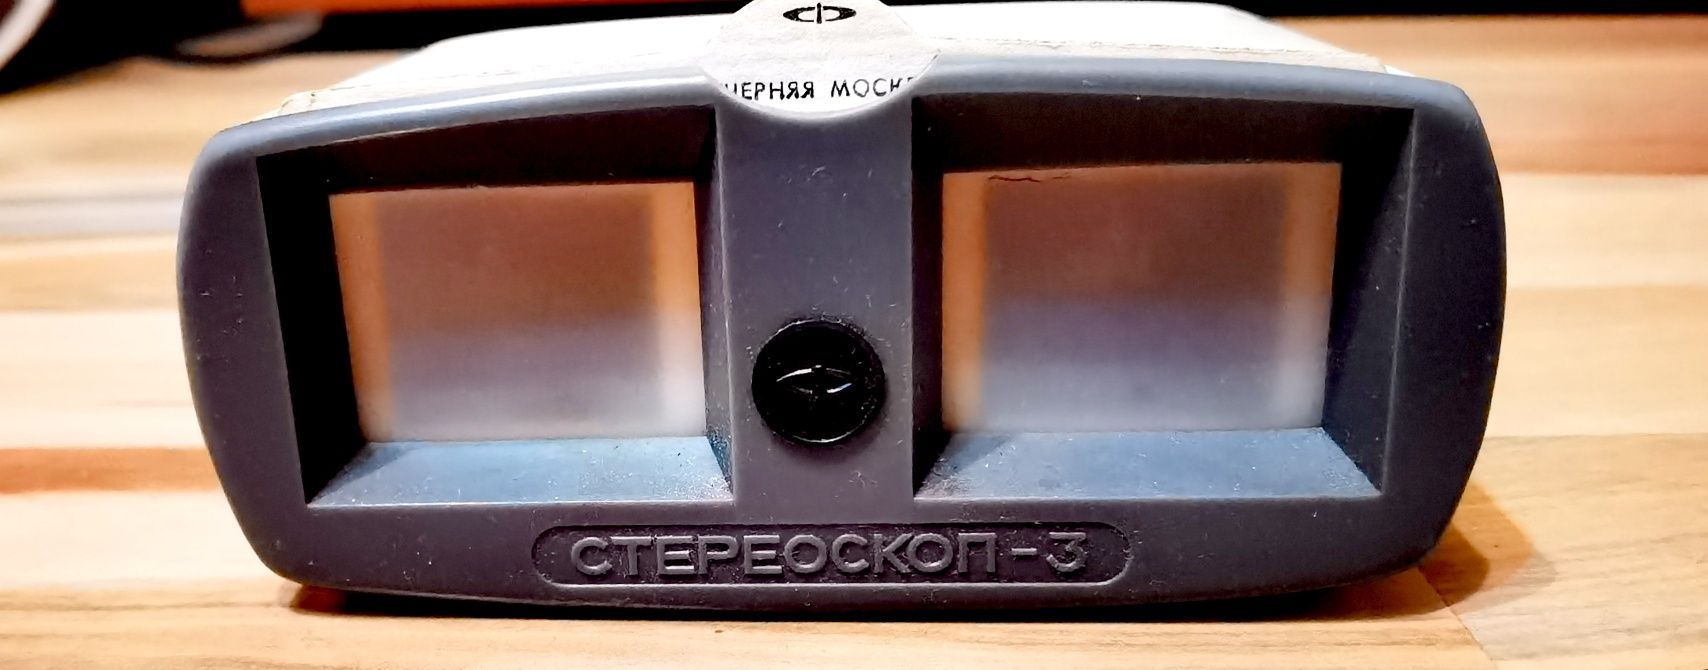 Stereoskop 3D vizor vechi pentru diapozitive retro vintage de colecție